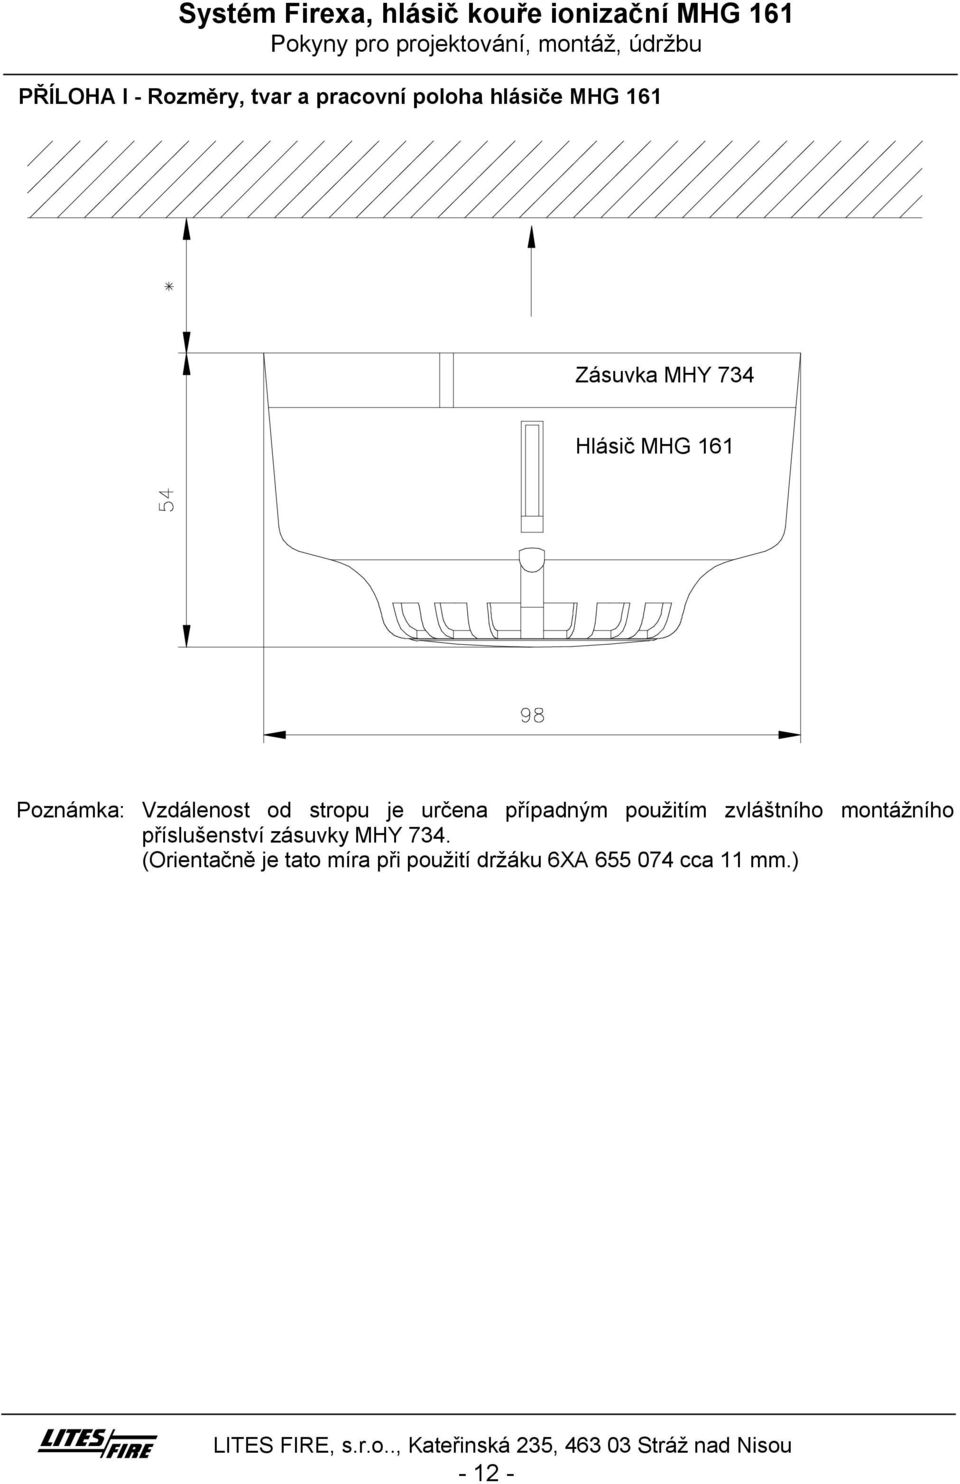 Systém Firexa, hlásič kouře ionizační MHG 161 Pokyny pro projektování,  montáž, údržbu - PDF Free Download